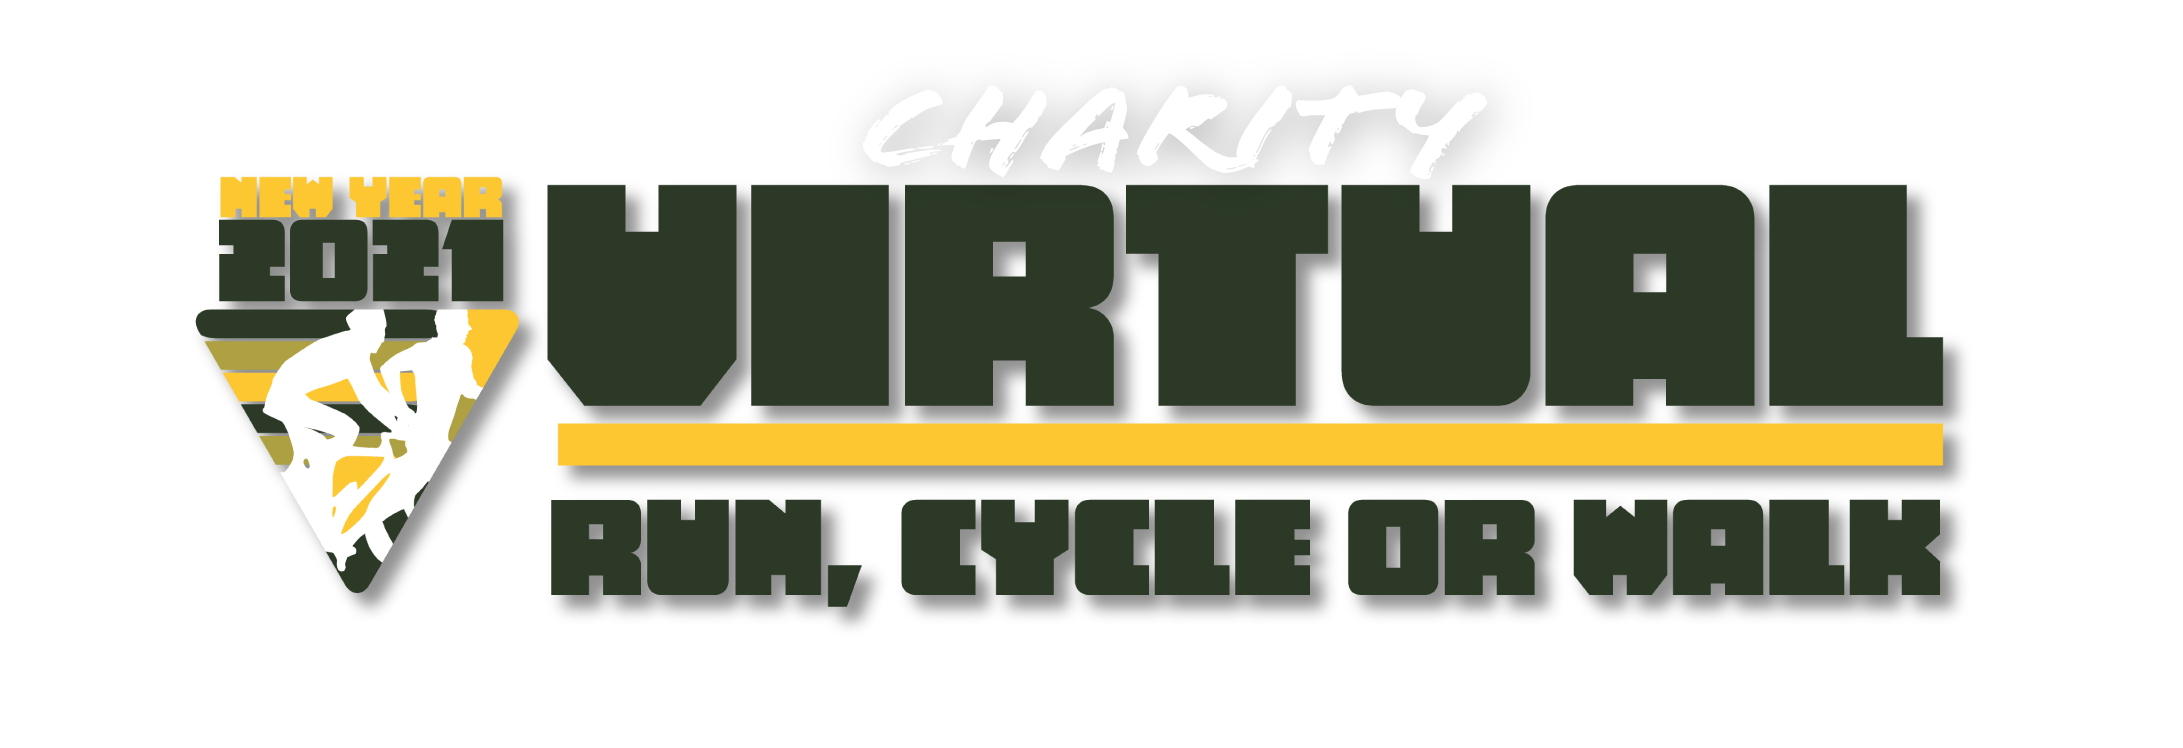 Logo of MarhaenMY New Year 2021 Charity Virtual Run, Cycle & Walk